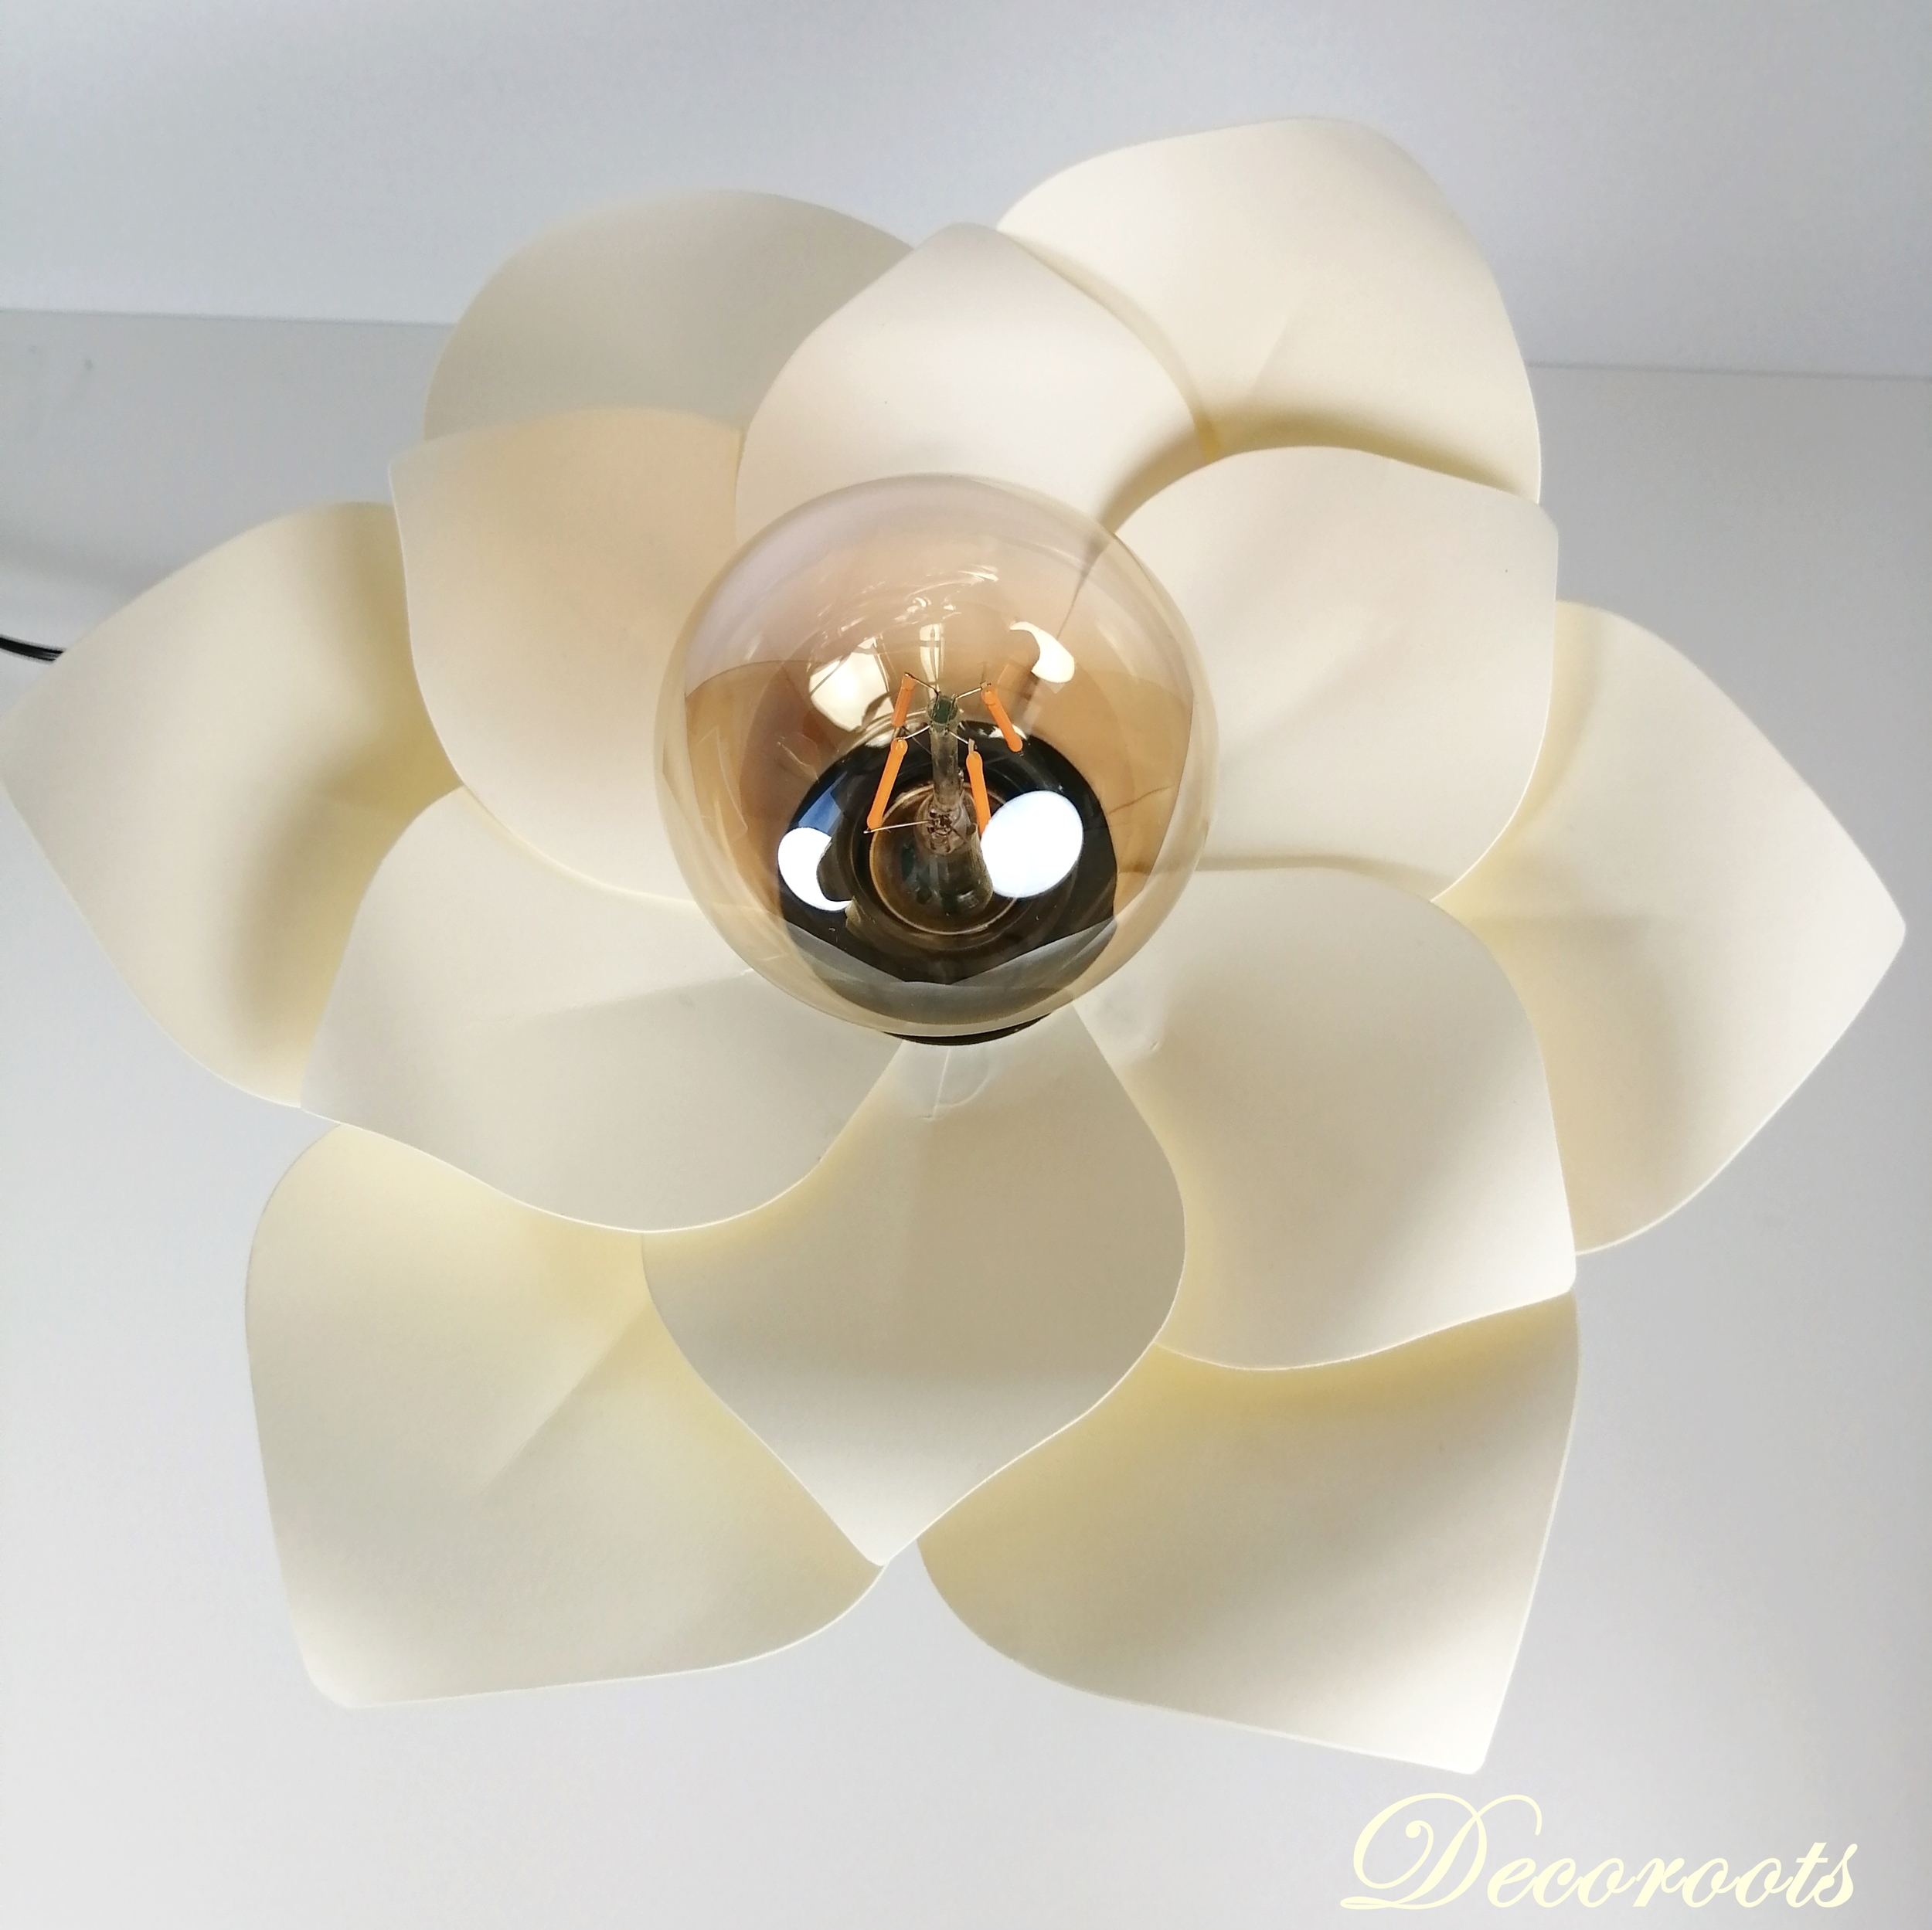 lampe chevet design fleur nenuphar origami beige ivoire papier enfant bébé japonaise 777 2